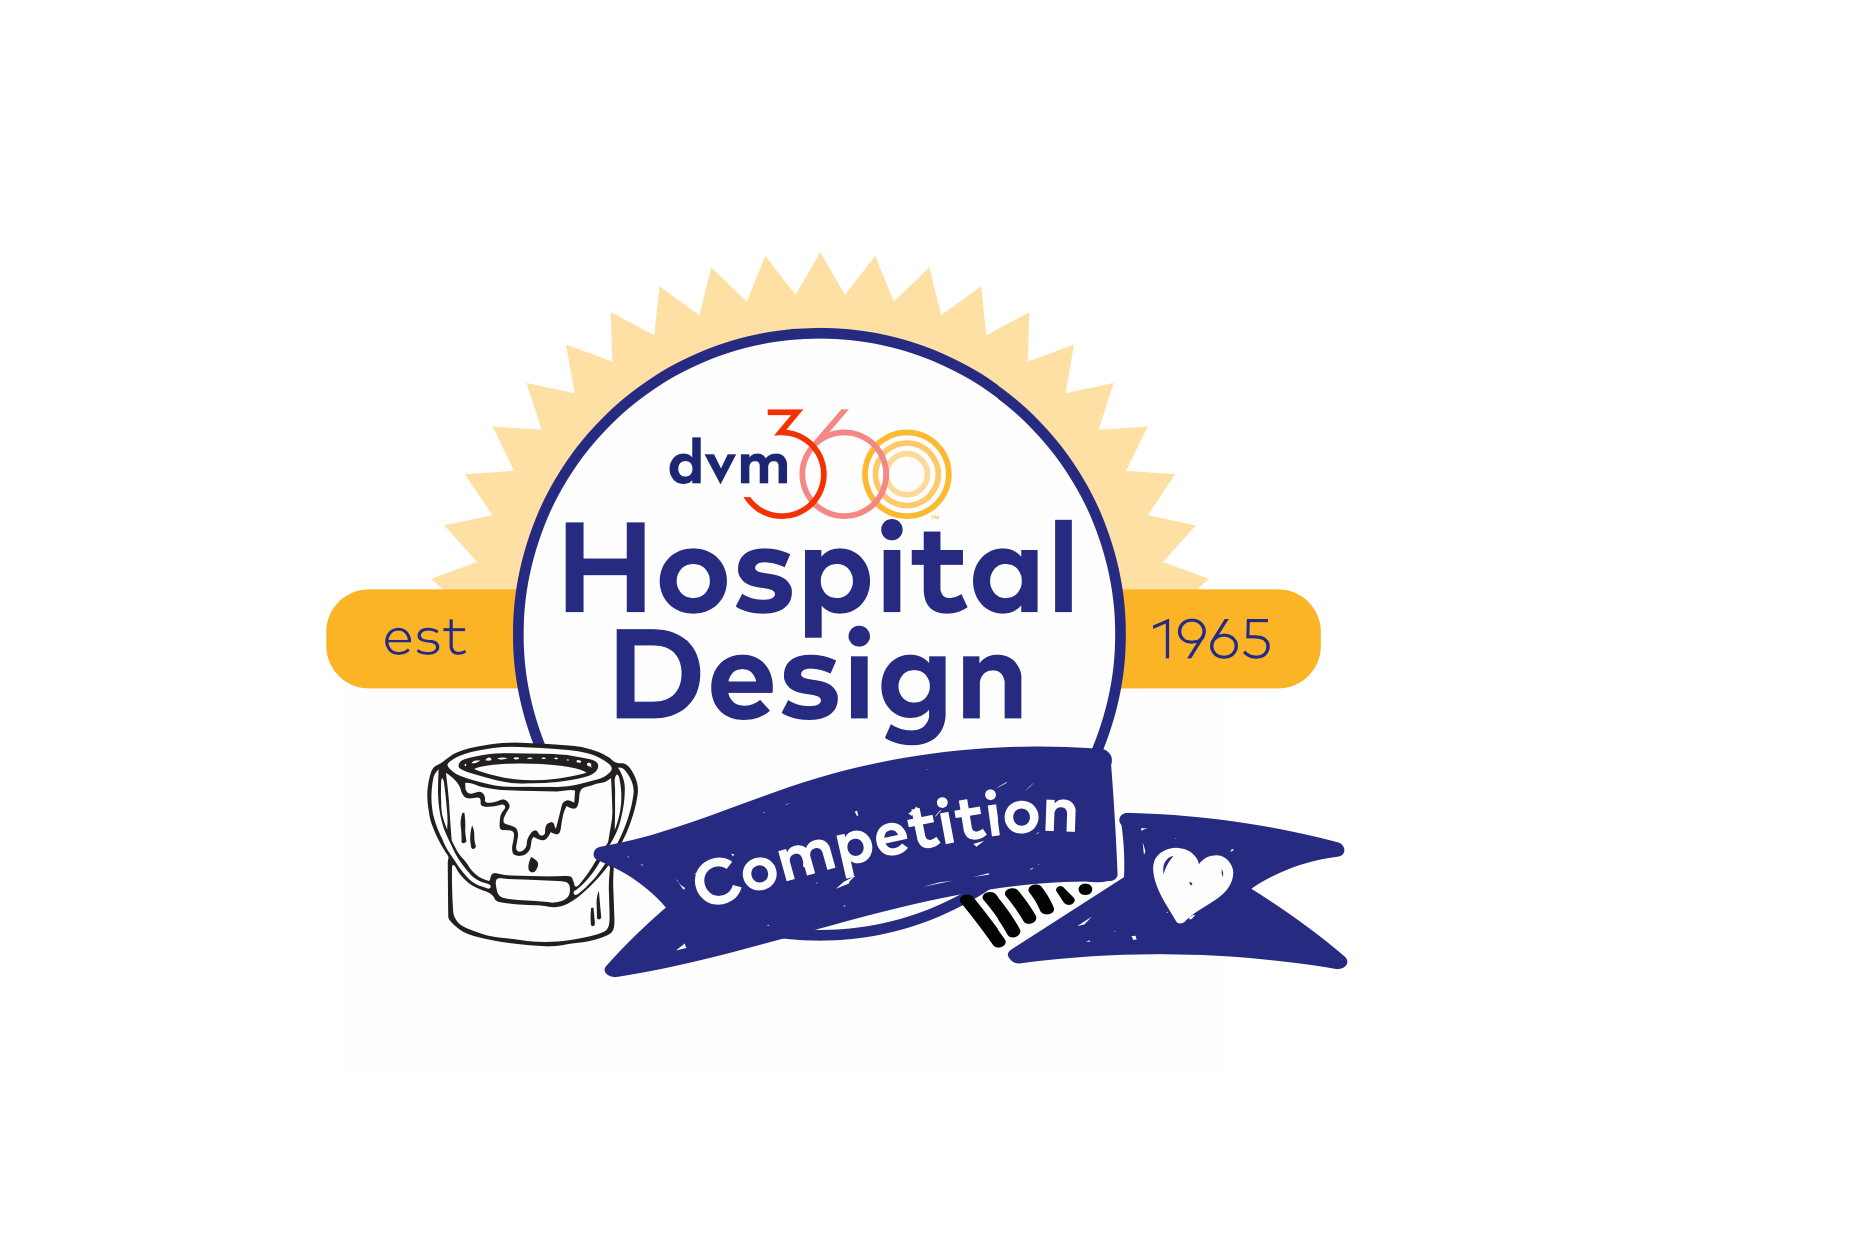 dvm360 hospital design competition